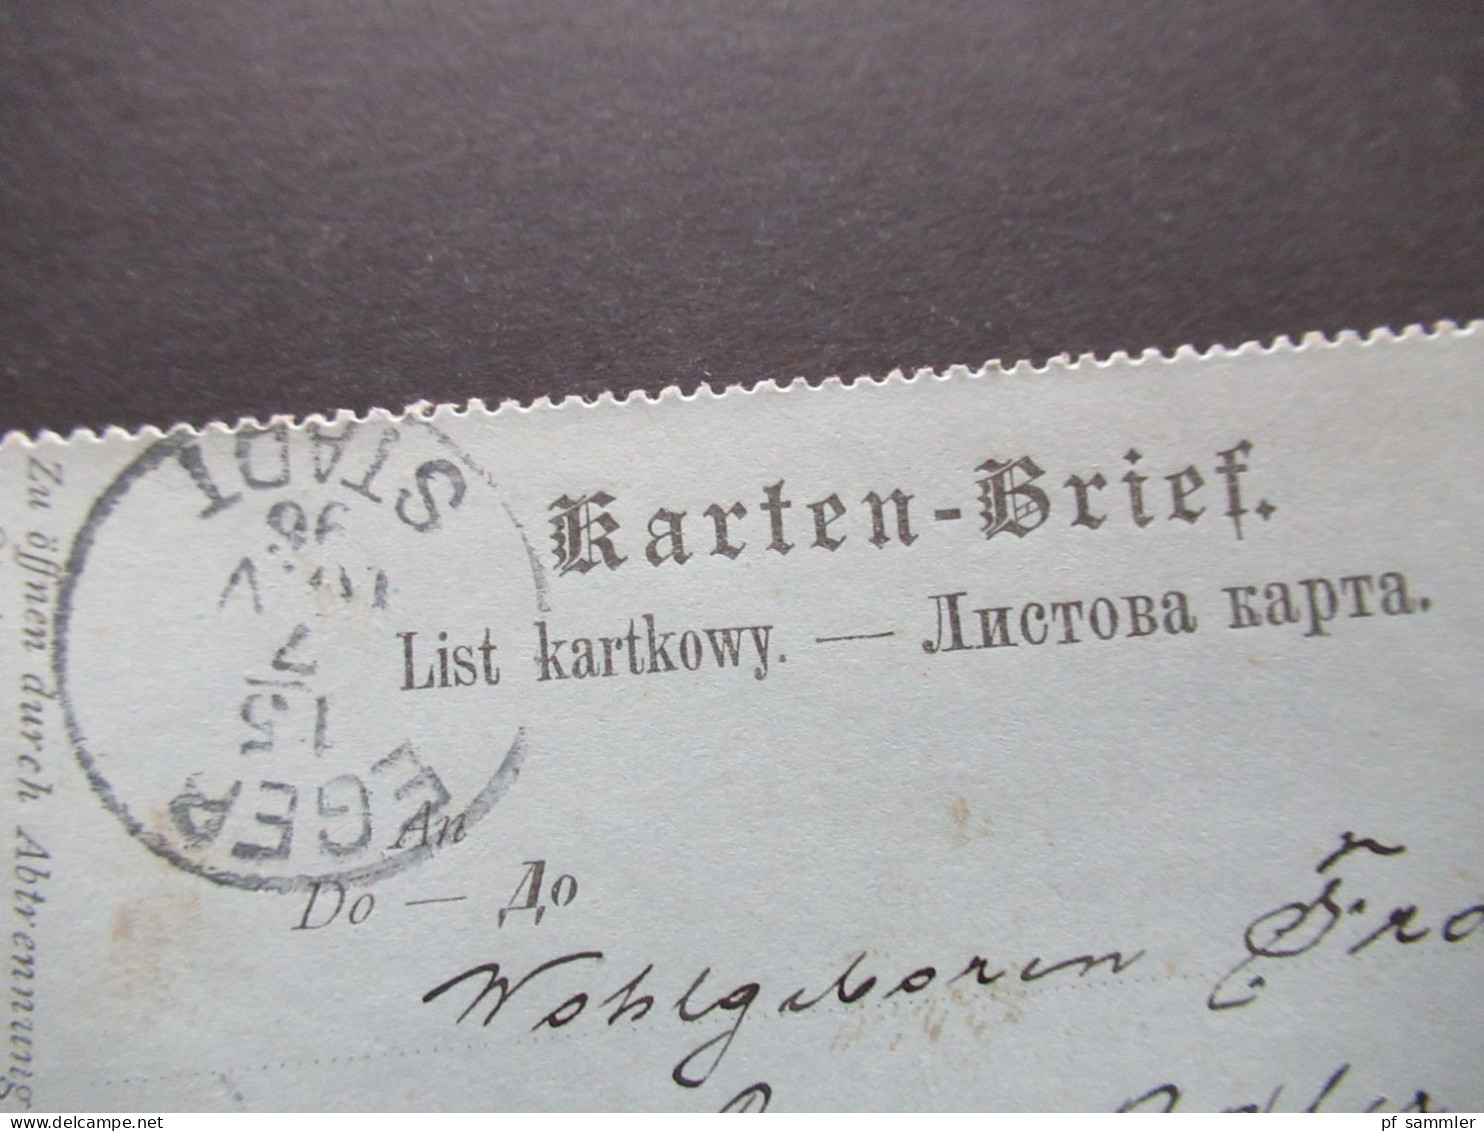 Österreich 1896 Kartenbrief K 19 (Poln.-Ruth.) Mit Zusatzfrankatur 2 Kreuzer Strichstempel Marienbad Nach Eger Gesendet - Cartes-lettres